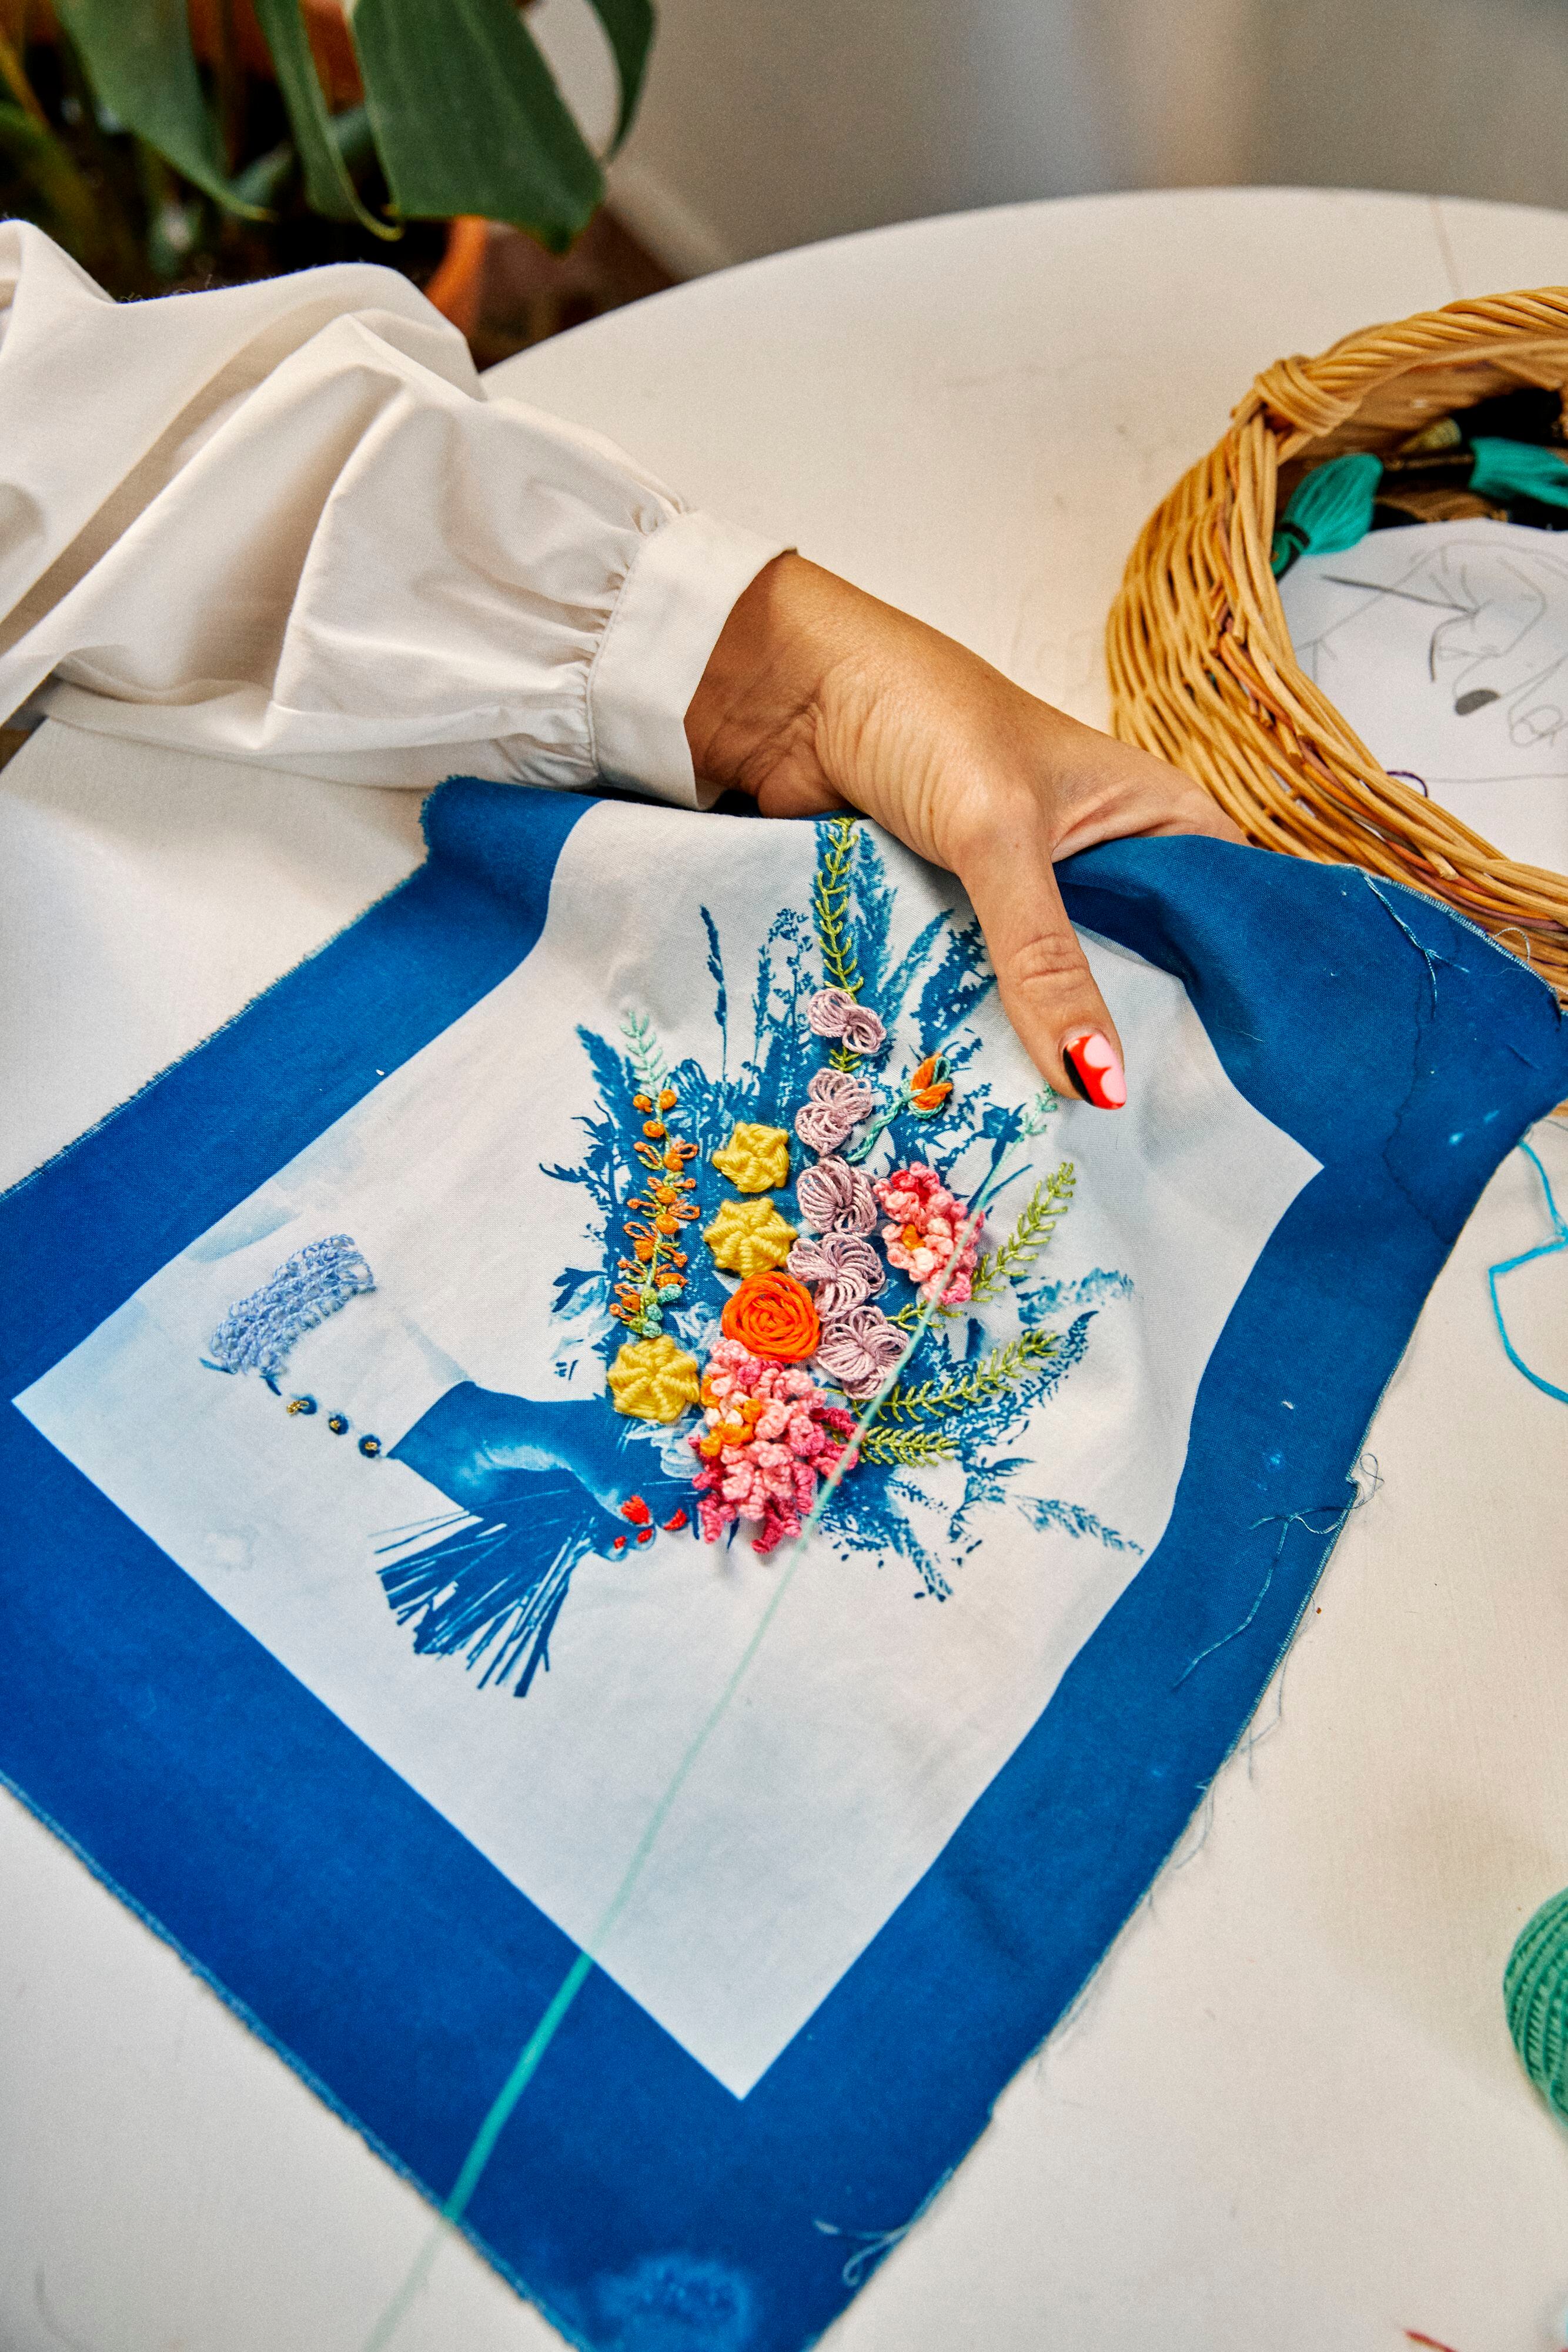 Un ramillete de flores representado por la artista en un pañuelo.